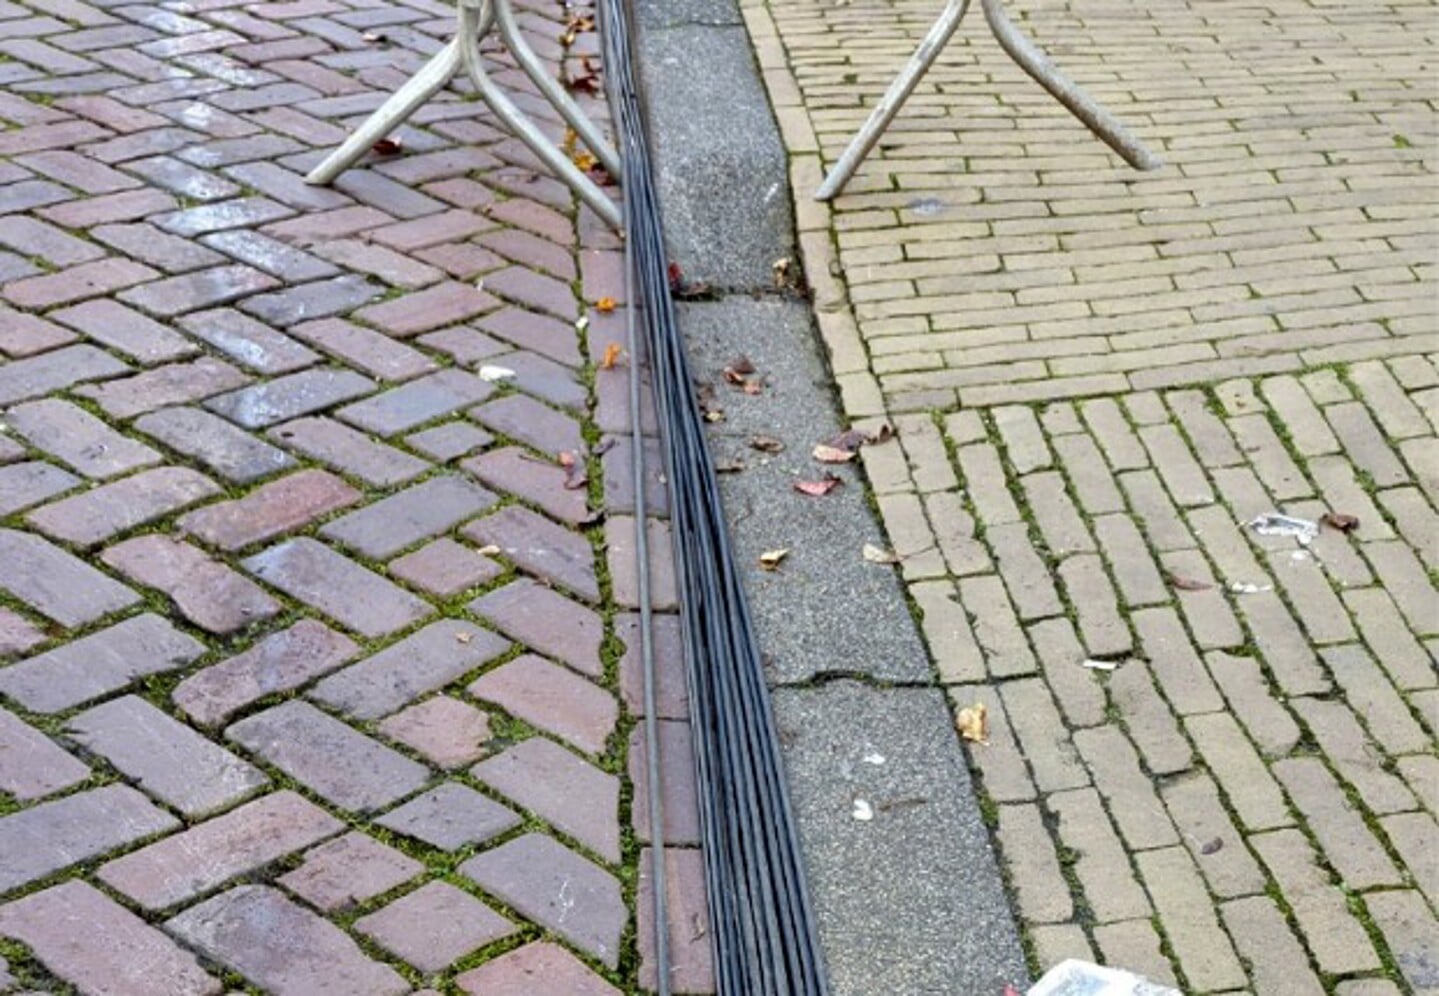 voorbereiding intocht Sint
kilometers kabel